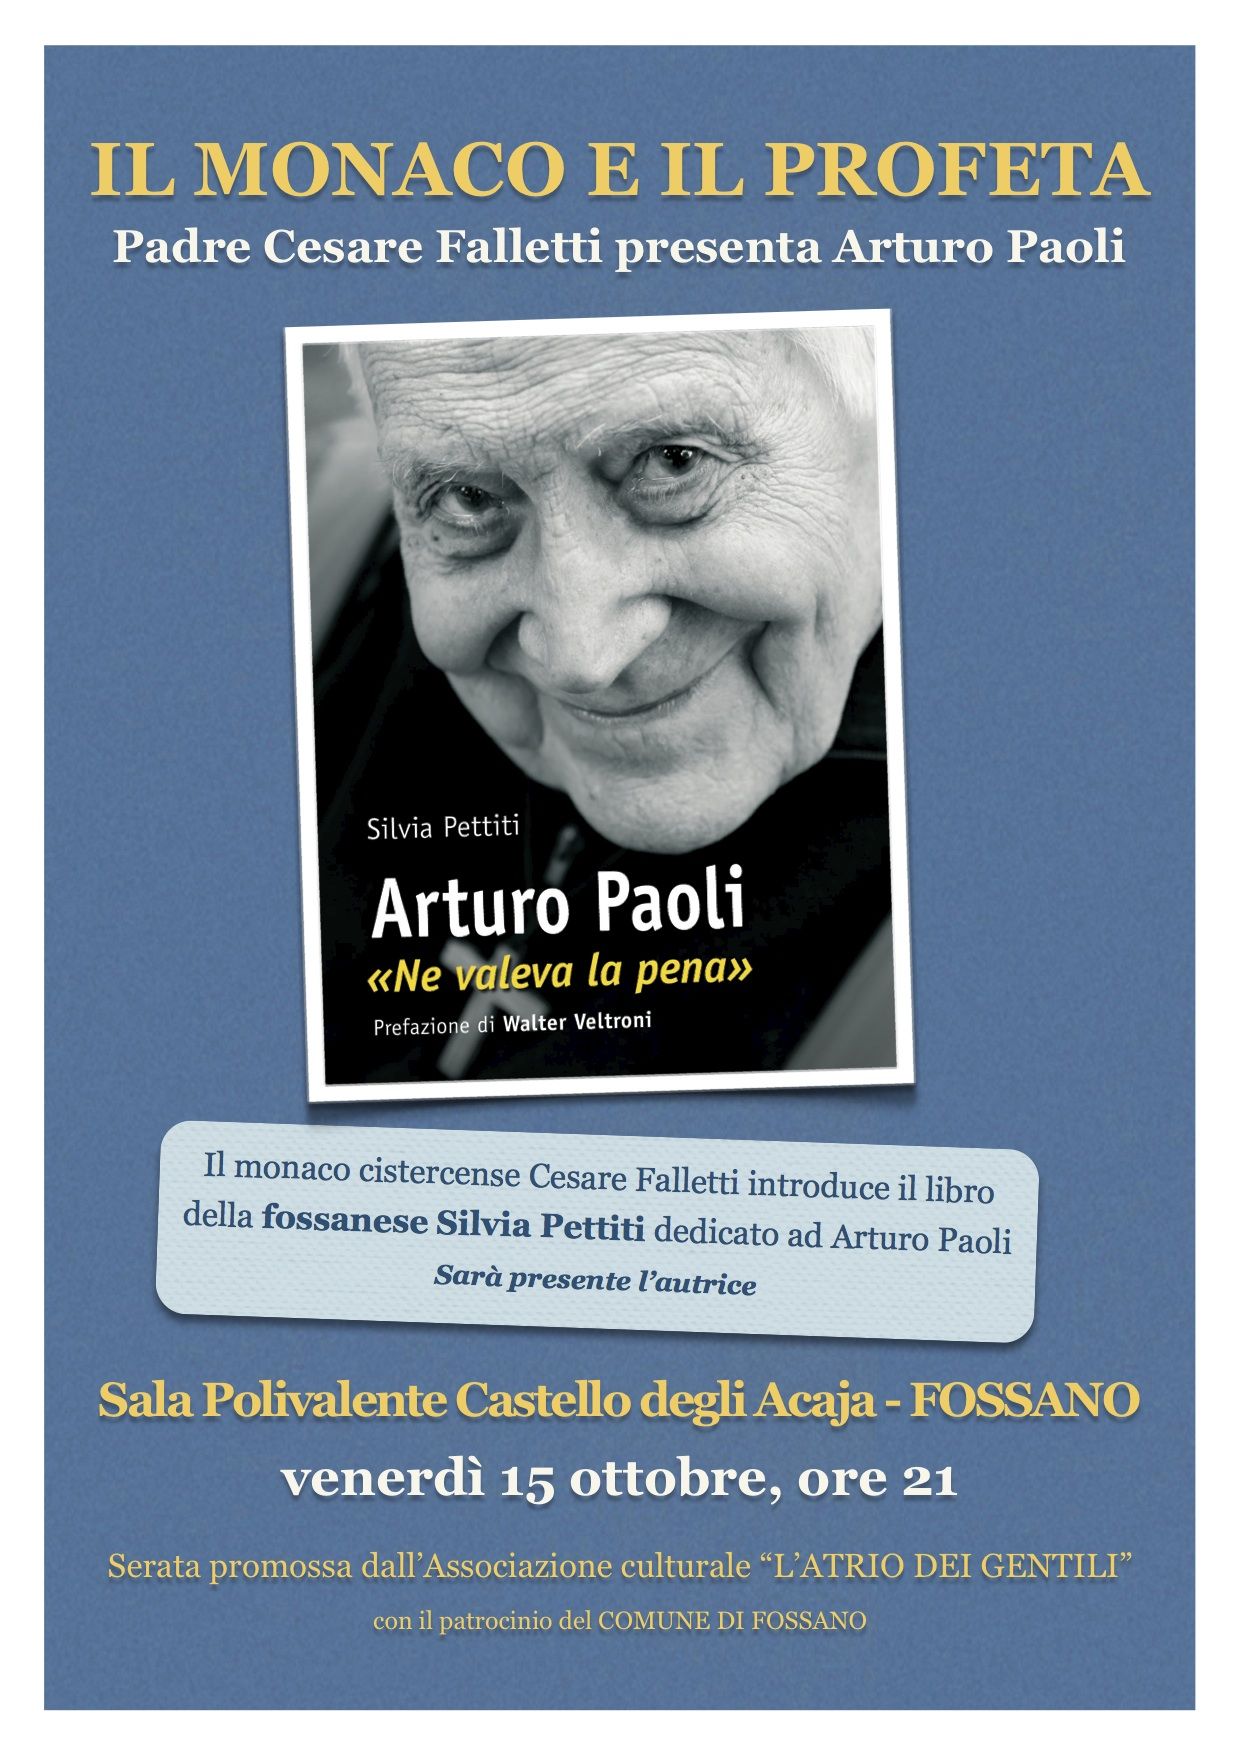 Il monaco e il profeta: Arturo Paoli